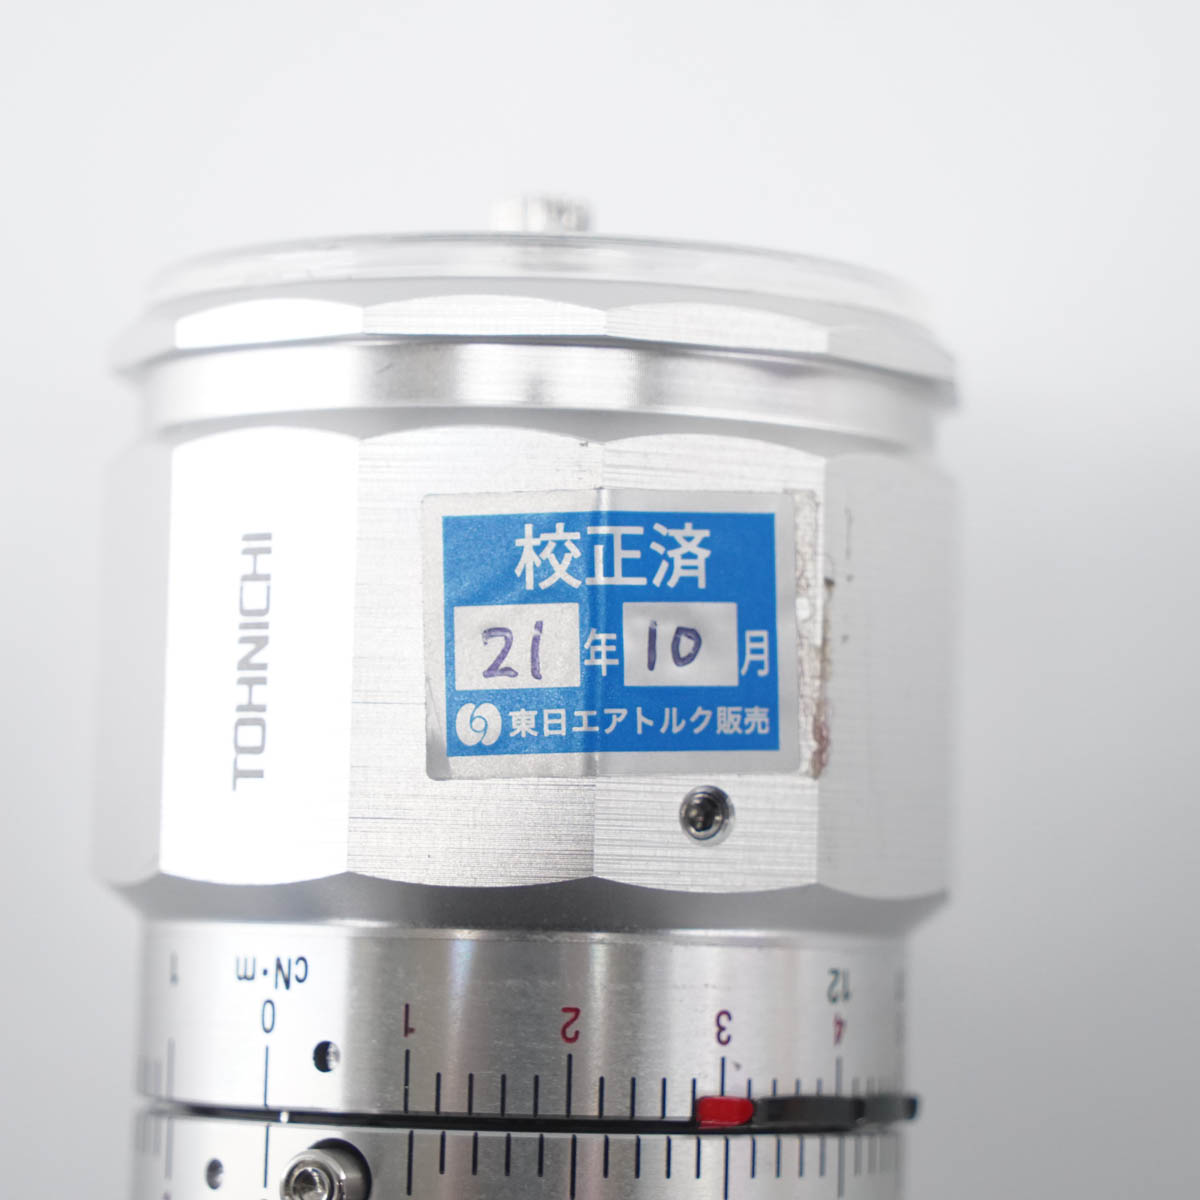 東日製作所 ATG3CN 微小トルク測定用トルクゲージ - 道具、工具